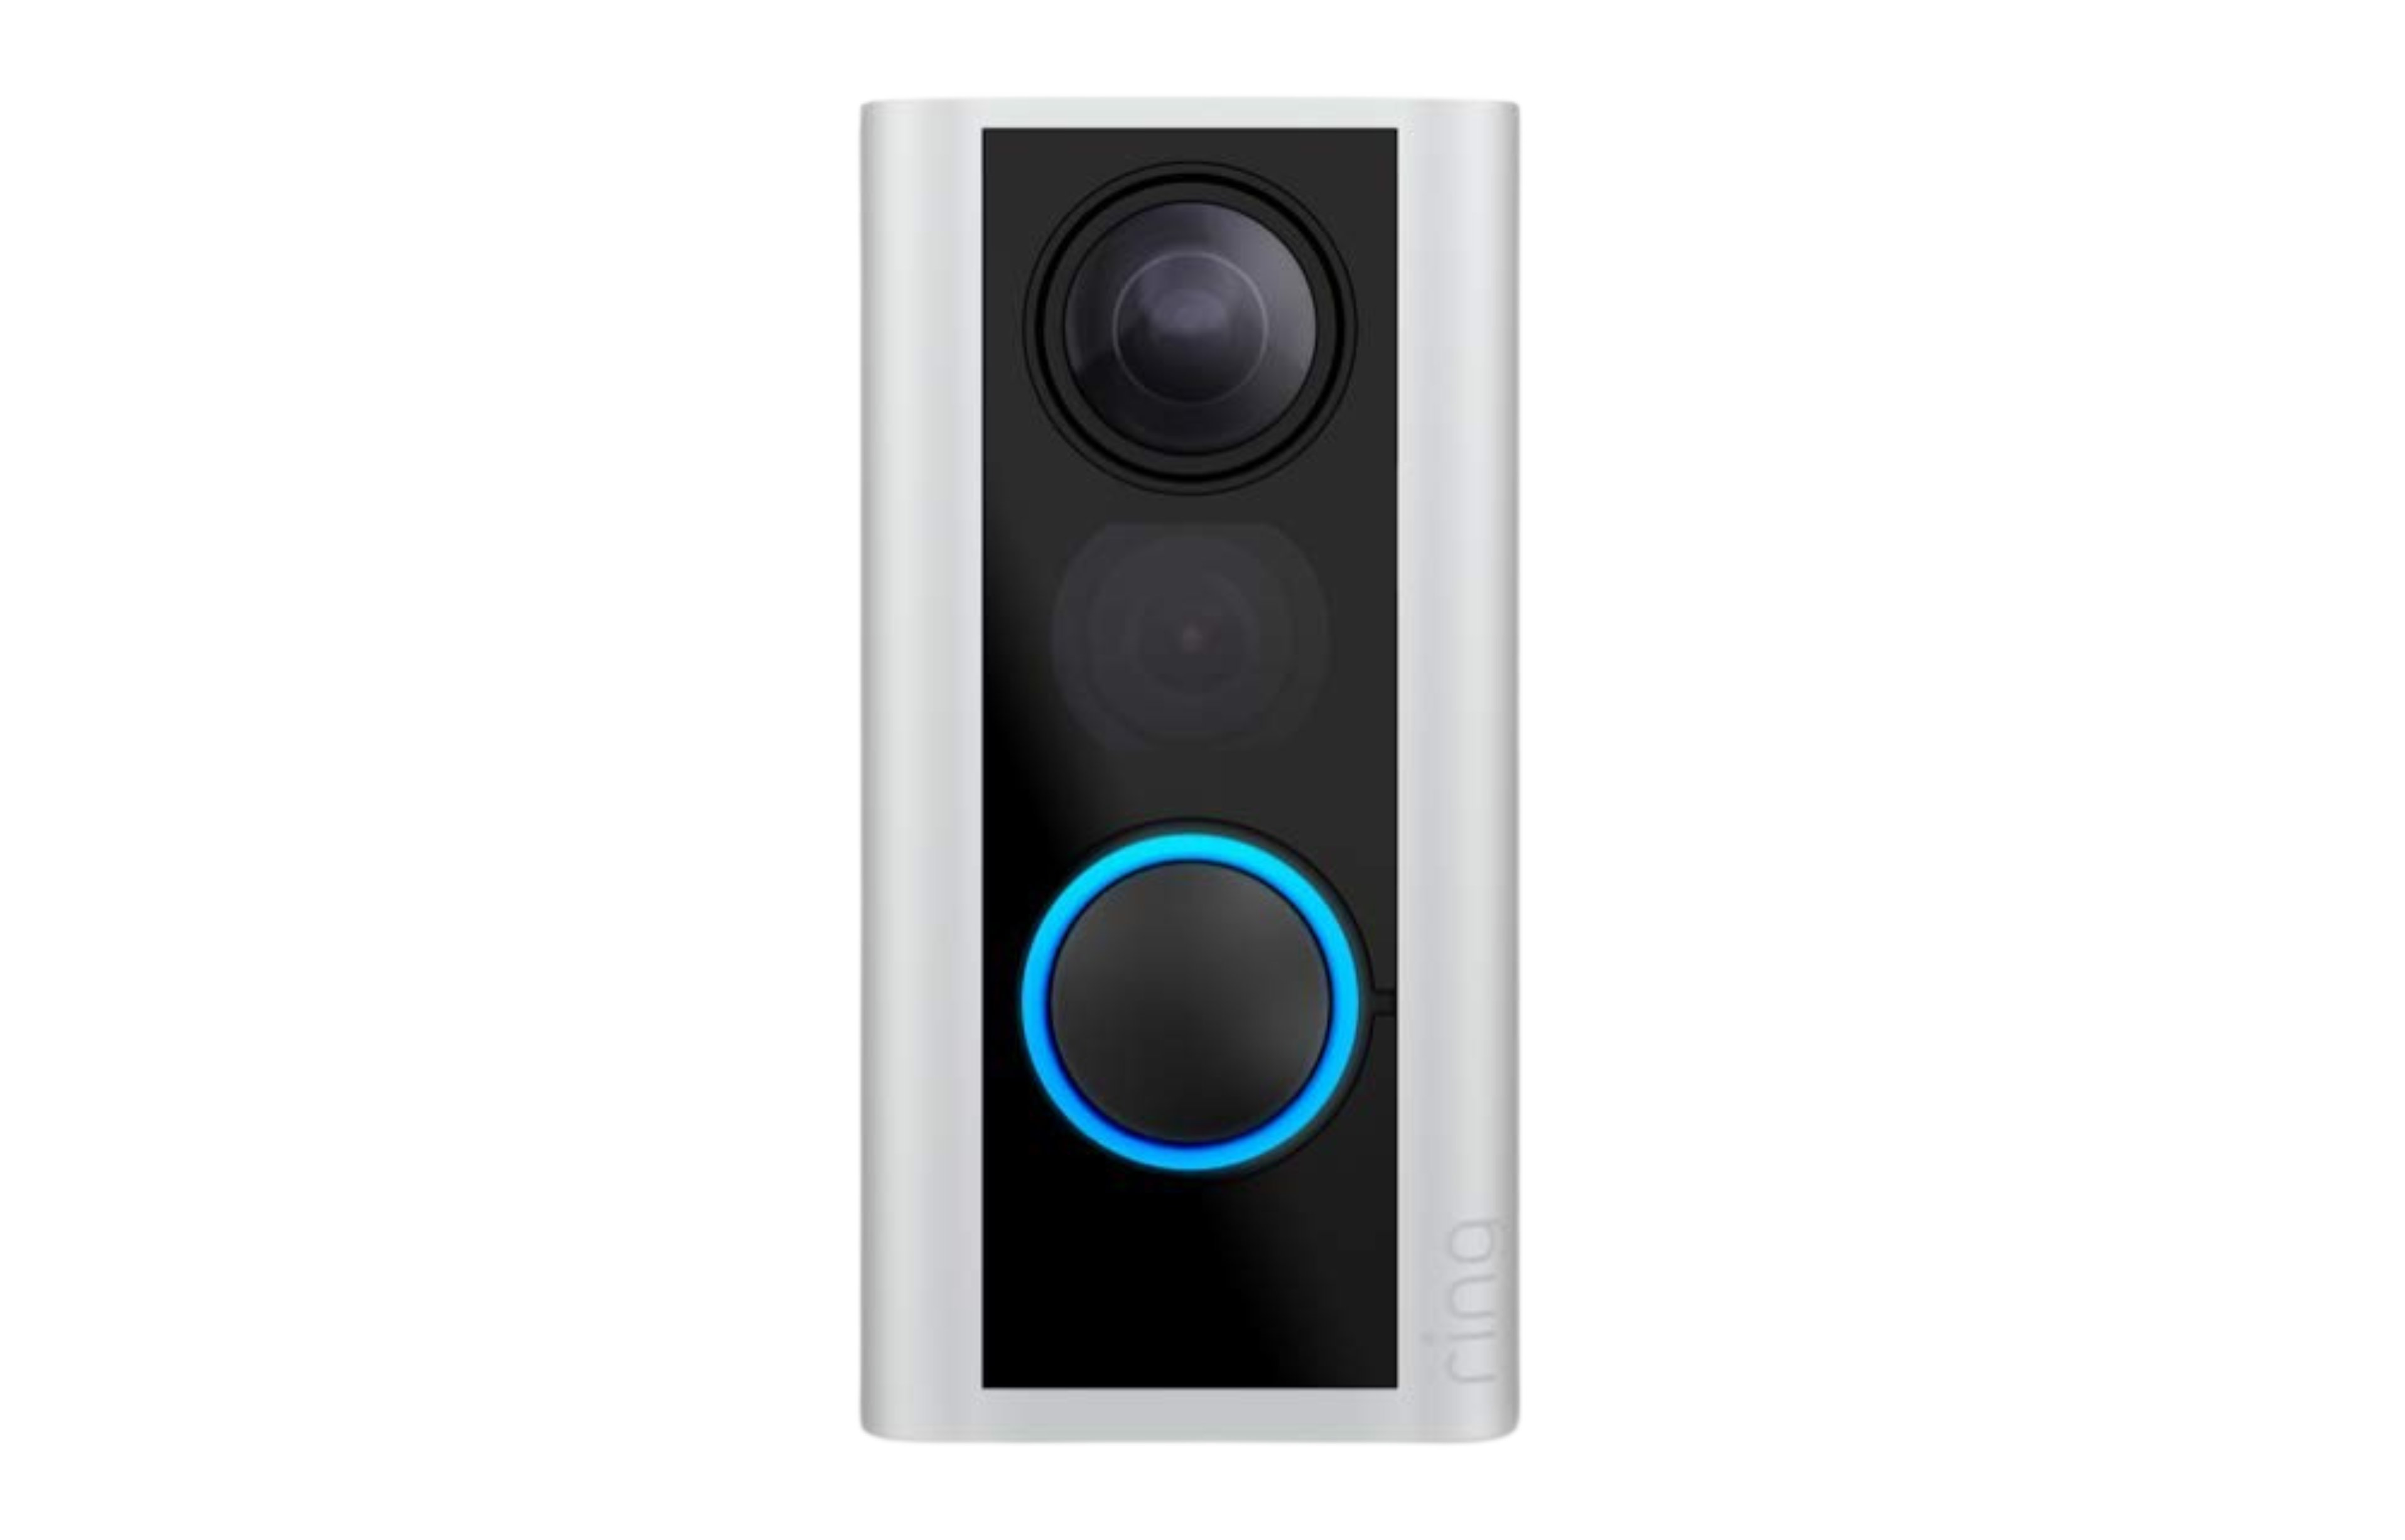 Best Home Video Doorbell System